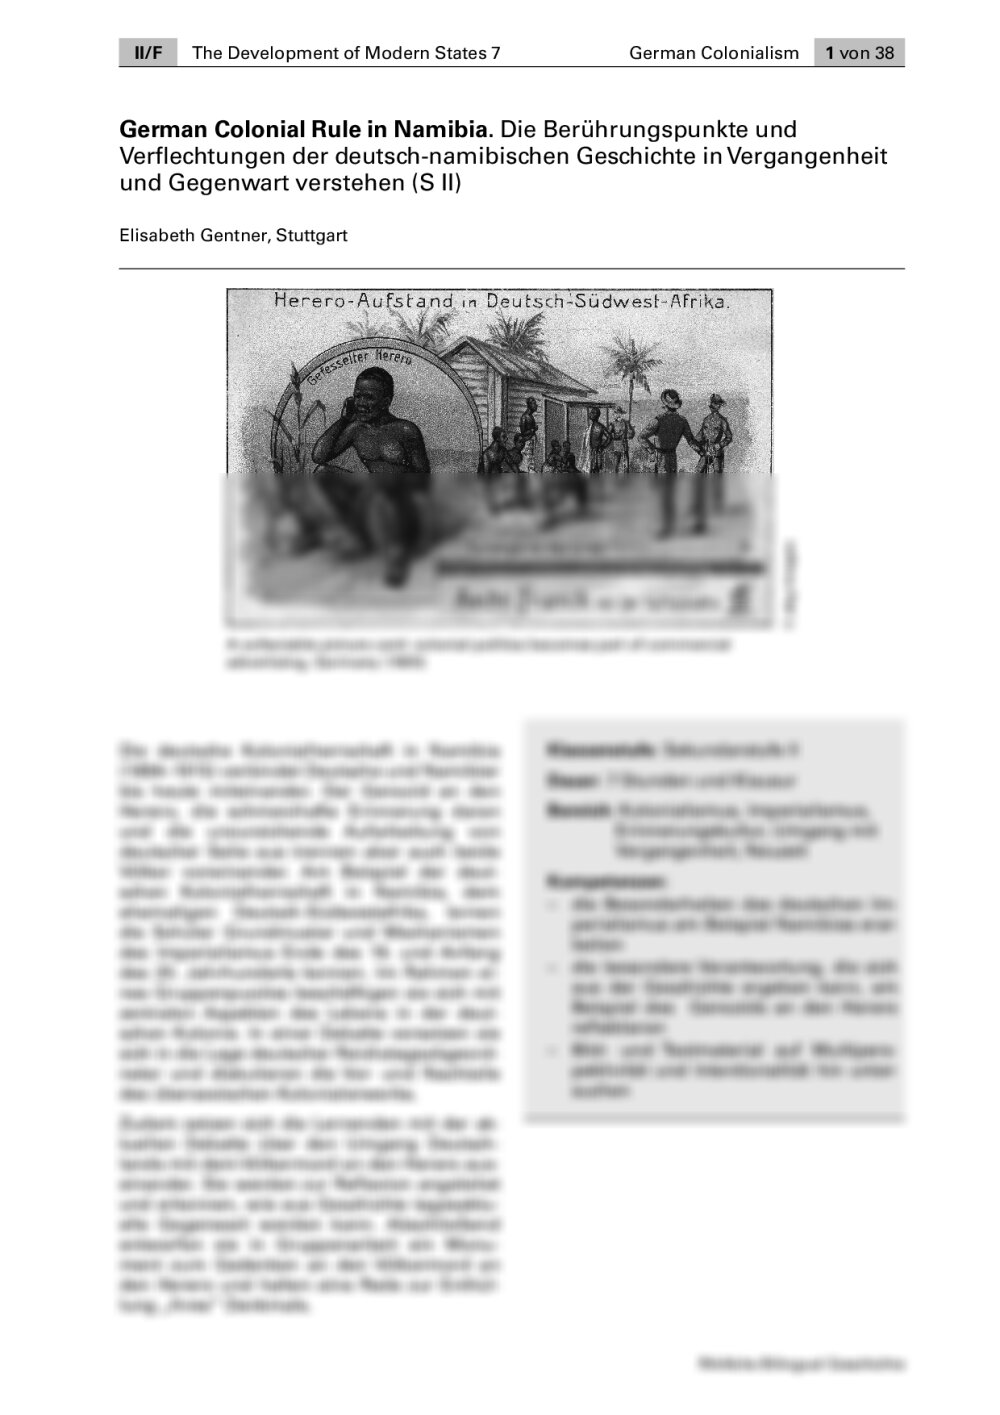 Die Berührungspunkte und Verflechtungen der deutsch-namibischen Geschichte in Vergangenheit und Gegenwart - Seite 1